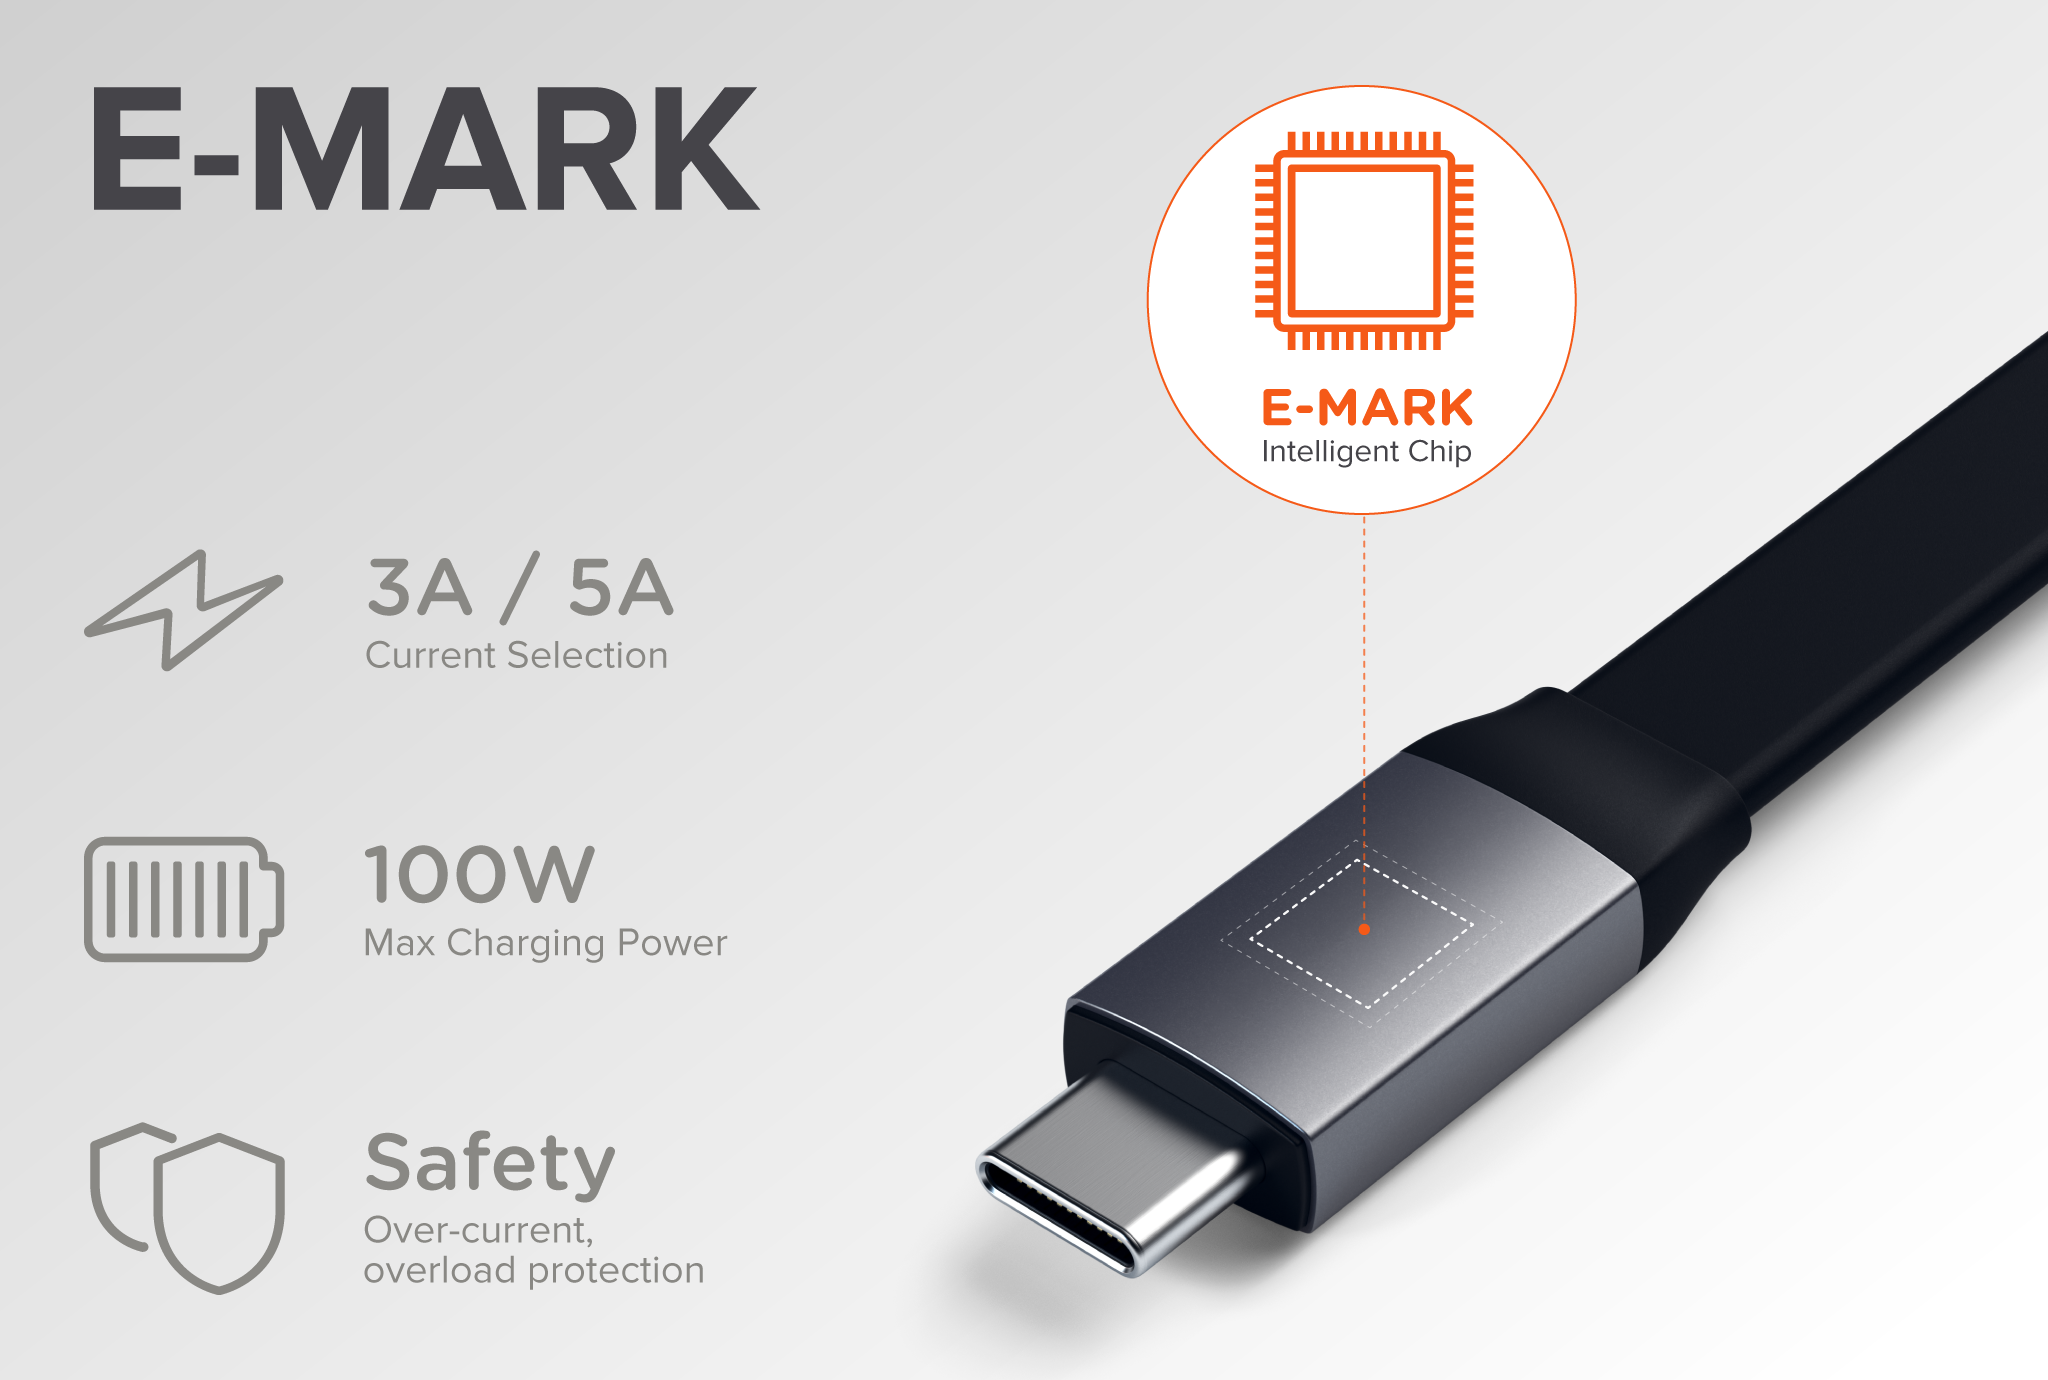 Identifying USB-C E-Mark